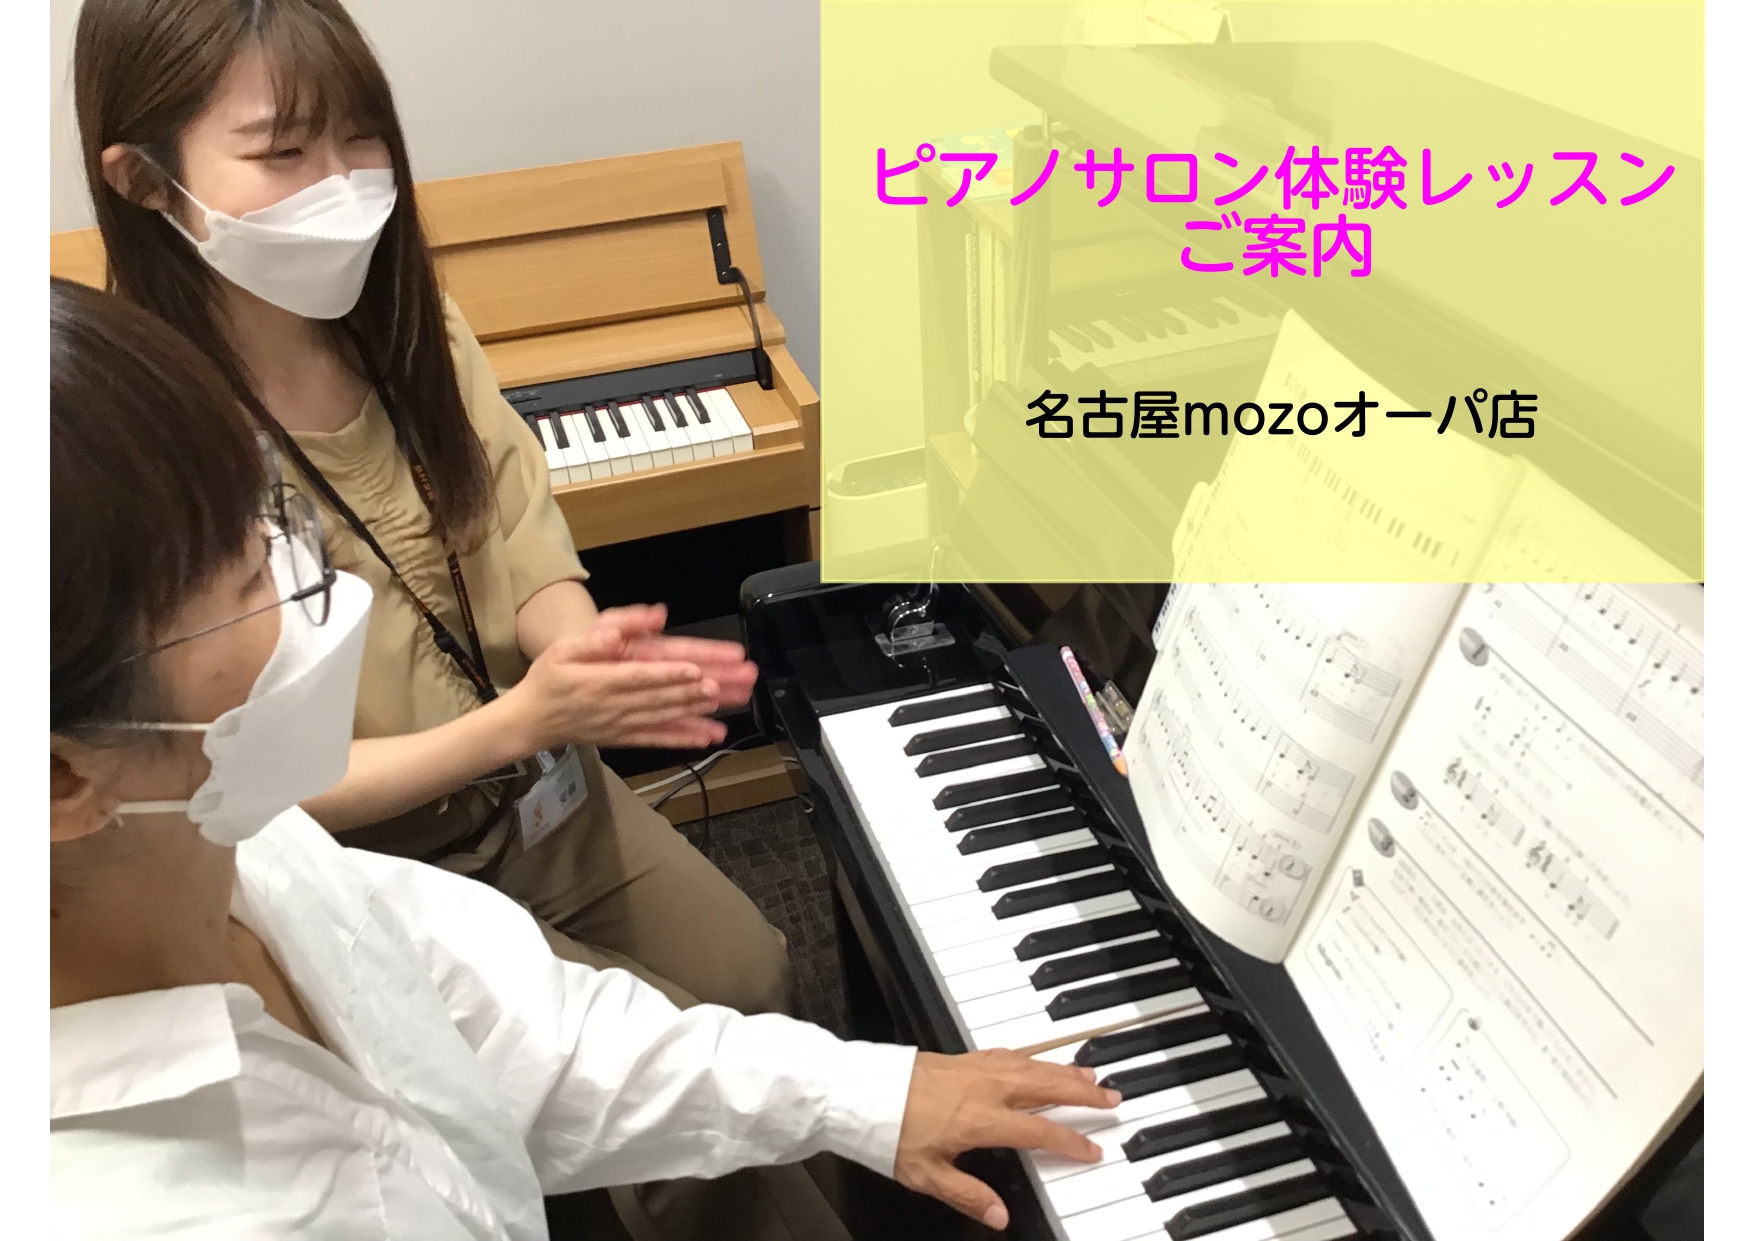 こんにちは。ピアノインストラクターの安藤百加です！今回、mozoのスタッフの方にピアノサロンの体験レッスンを受講していただきました！その様子をレポートいたします♪ 今回受講していただいたスタッフ mozo店のスタッフ松尾さん！ 「15年以上のバンド歴はあるものの、ピアノはほぼ弾けません。実際は、ピア […]